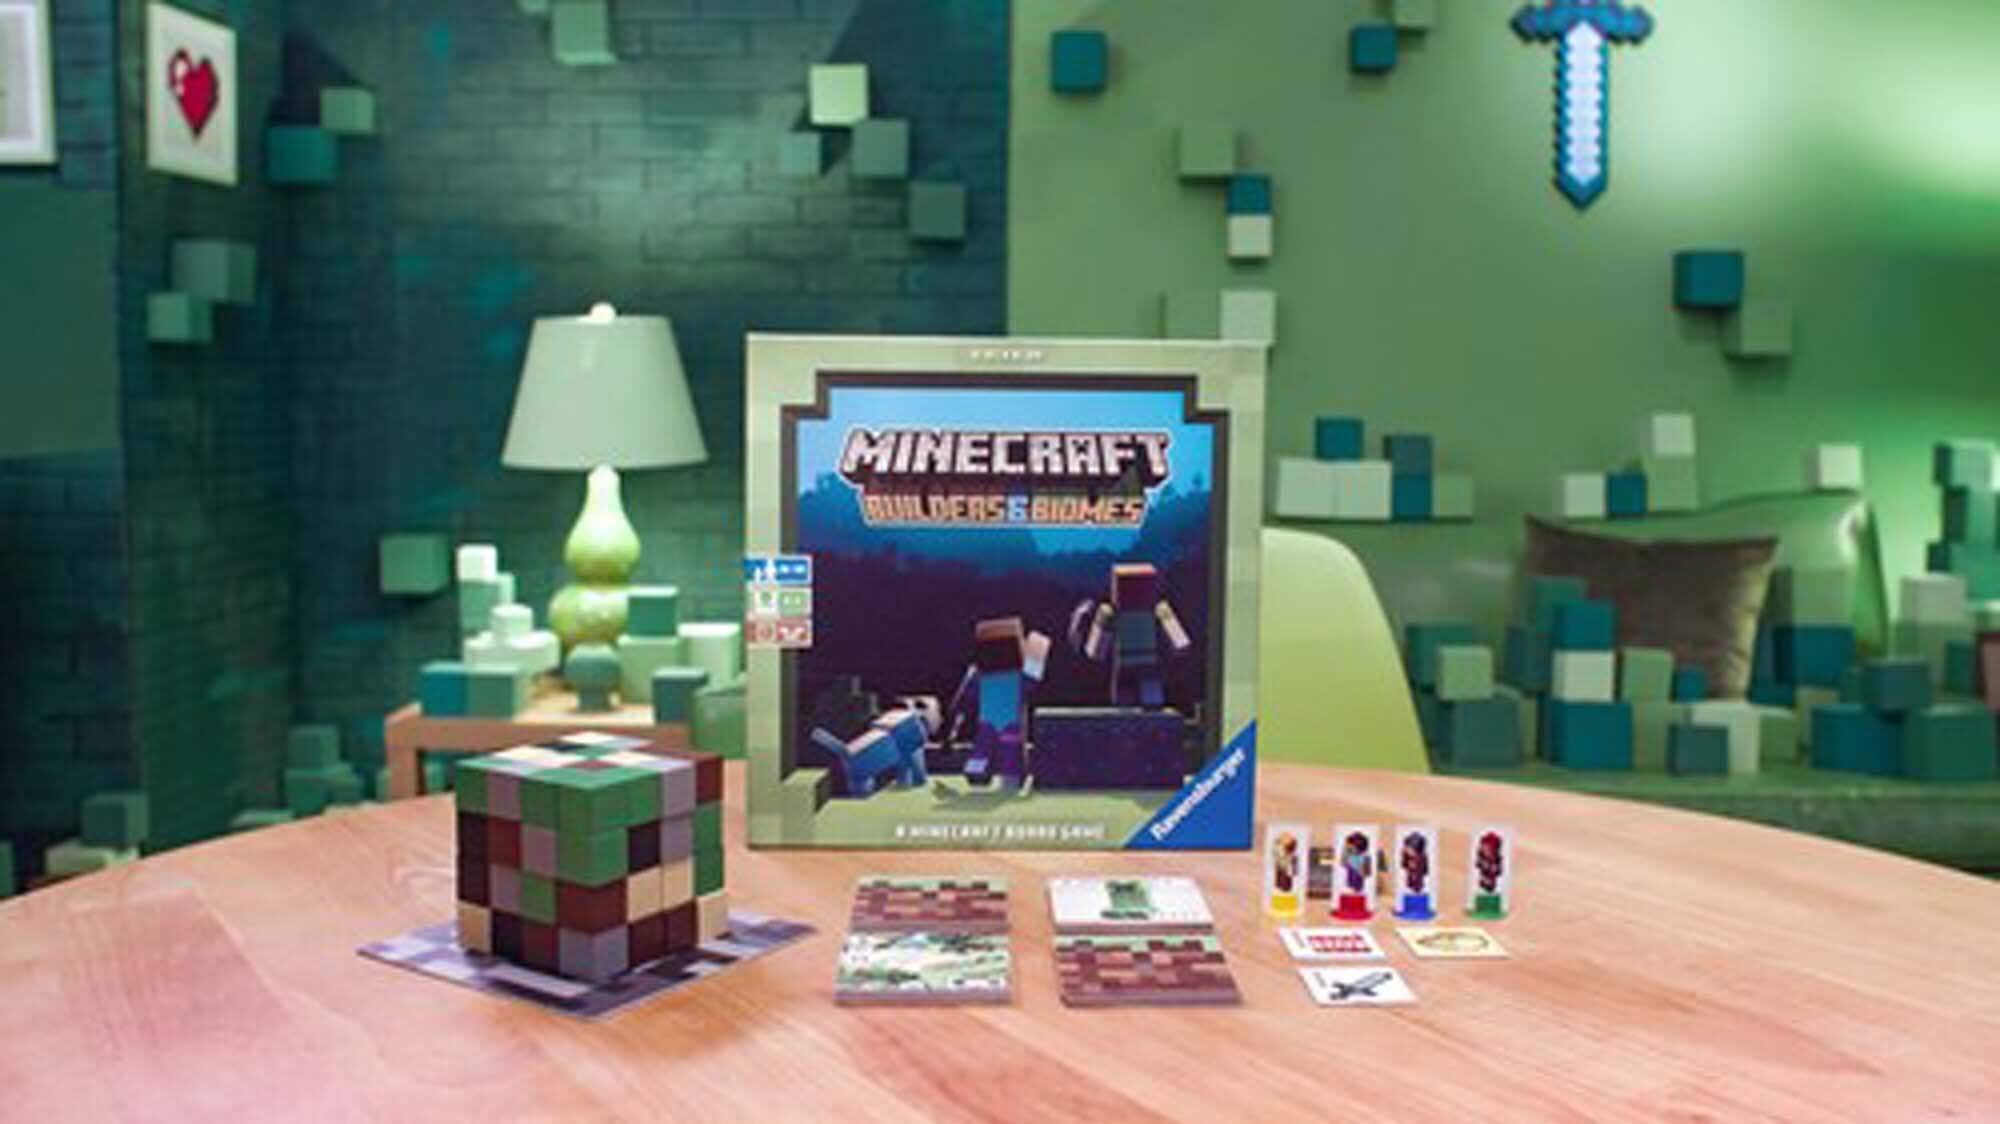 Ravensburger - Minecraft Brädspel